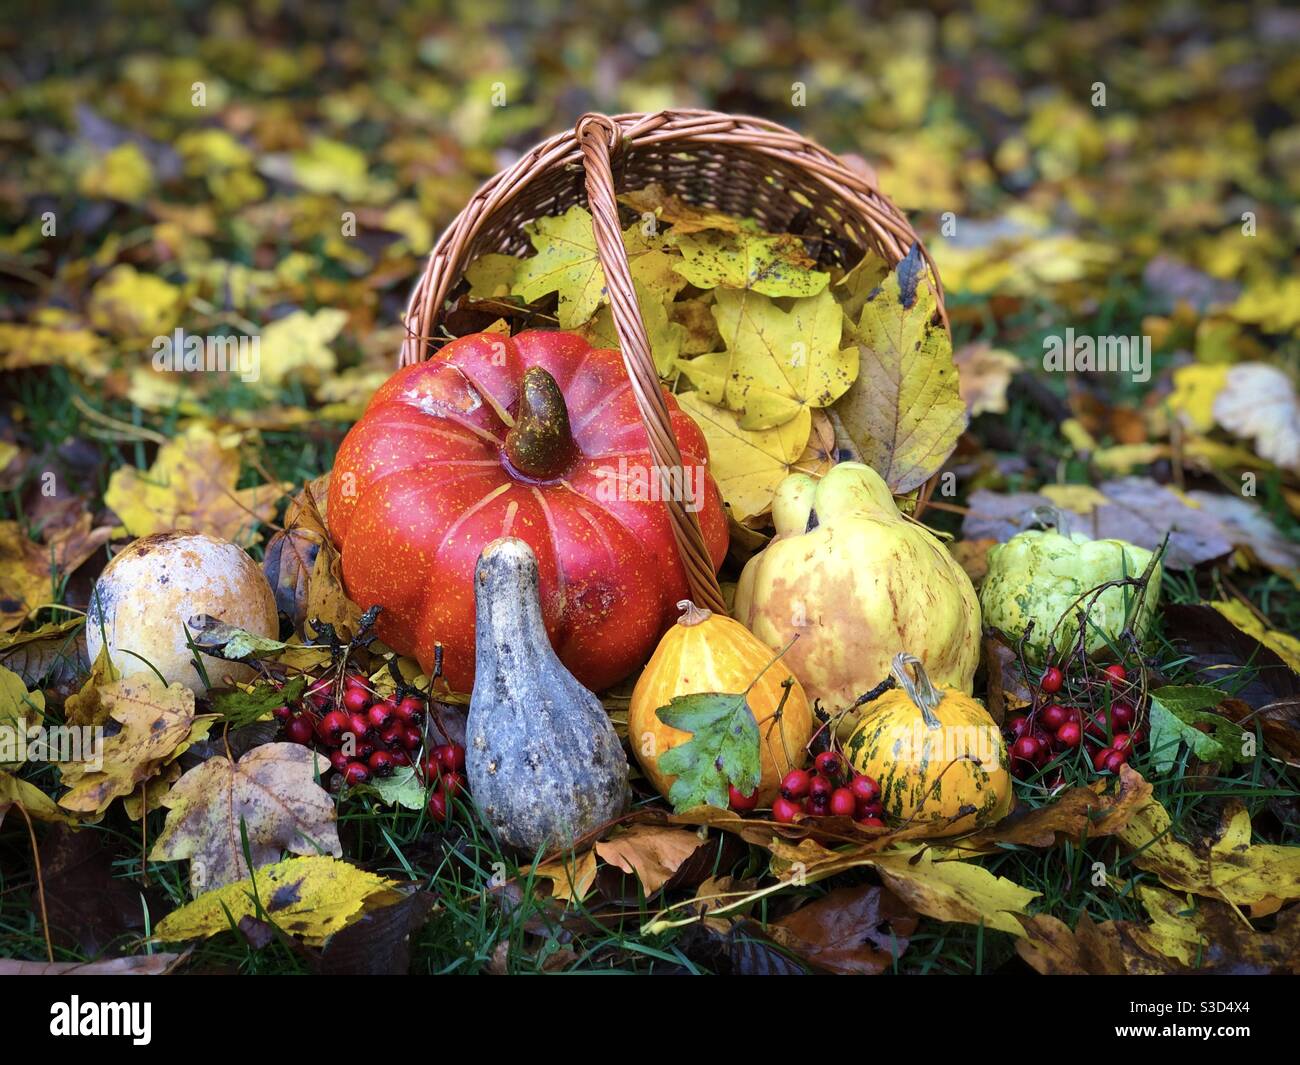 La natura morta dell'autunno consiste in un cesto di legno riempito di zucche, frutta e foglie gialle Foto Stock